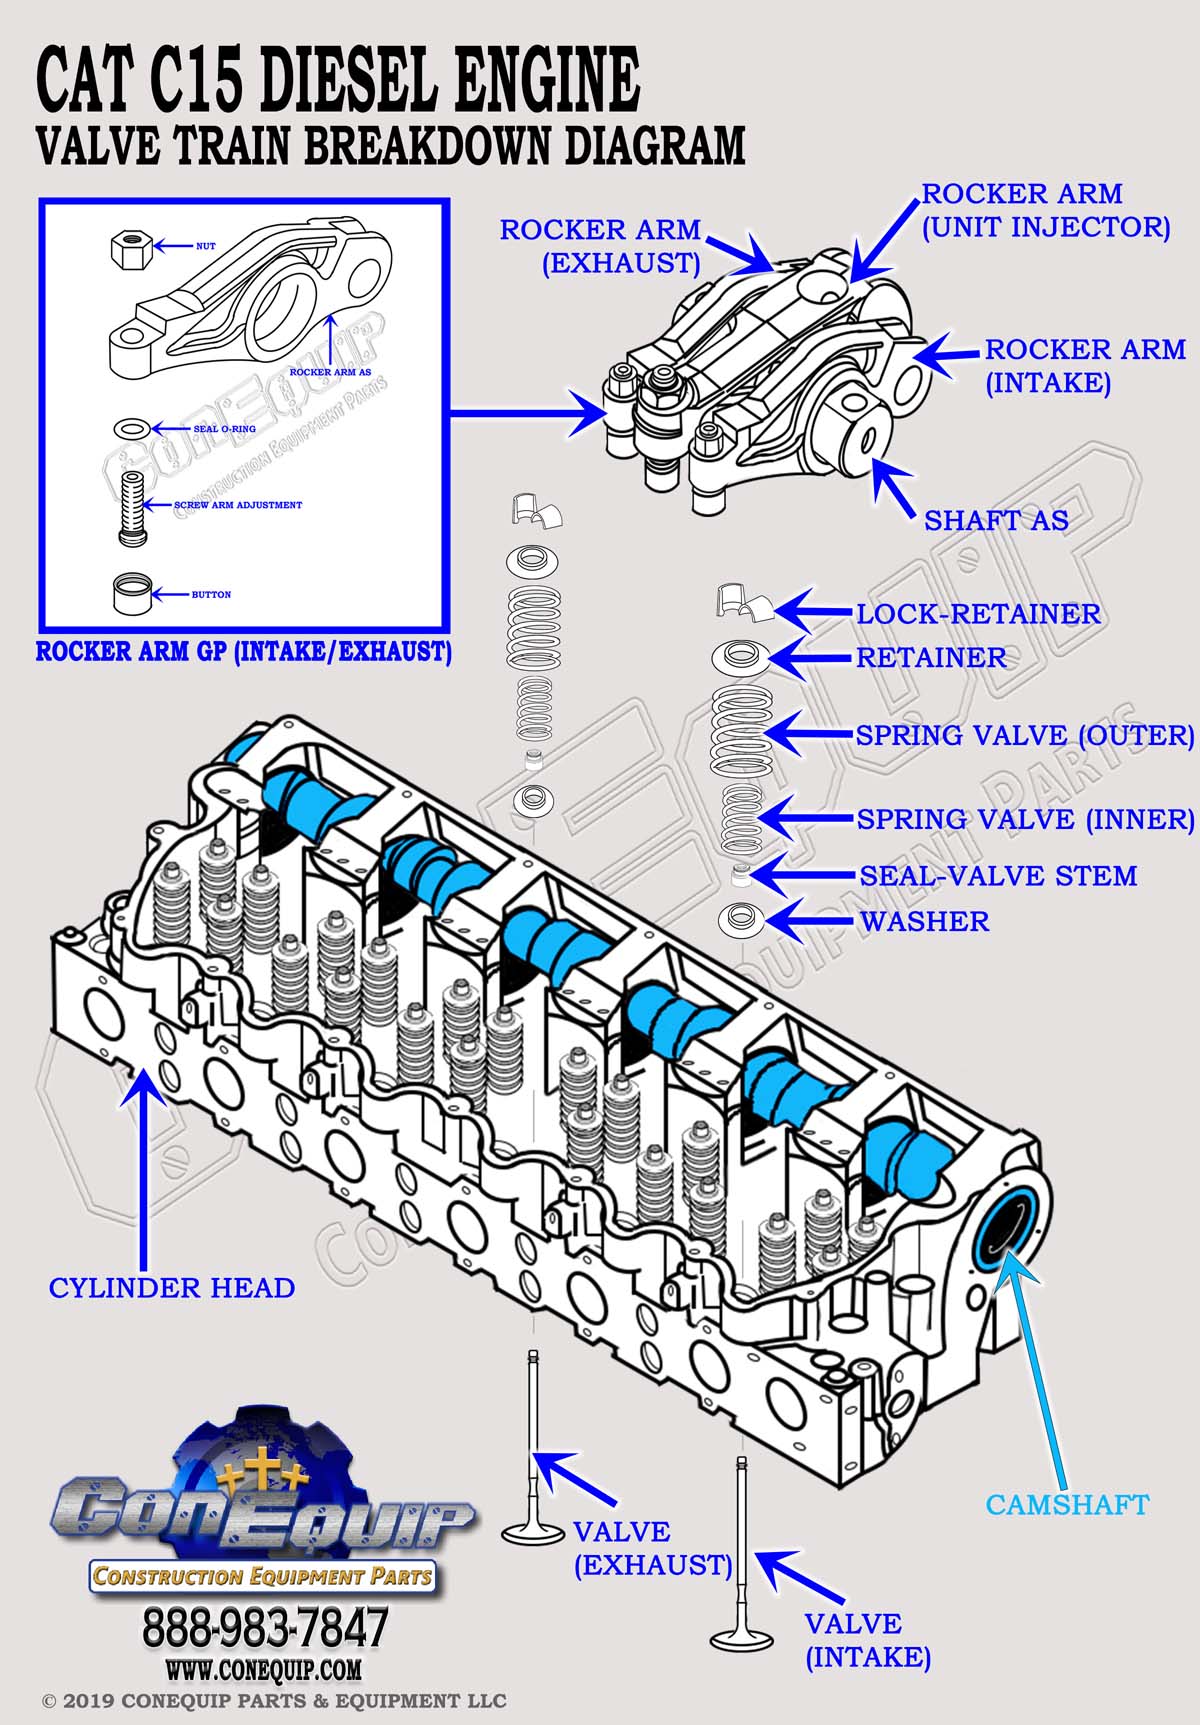 Cat C15 valve train diagram